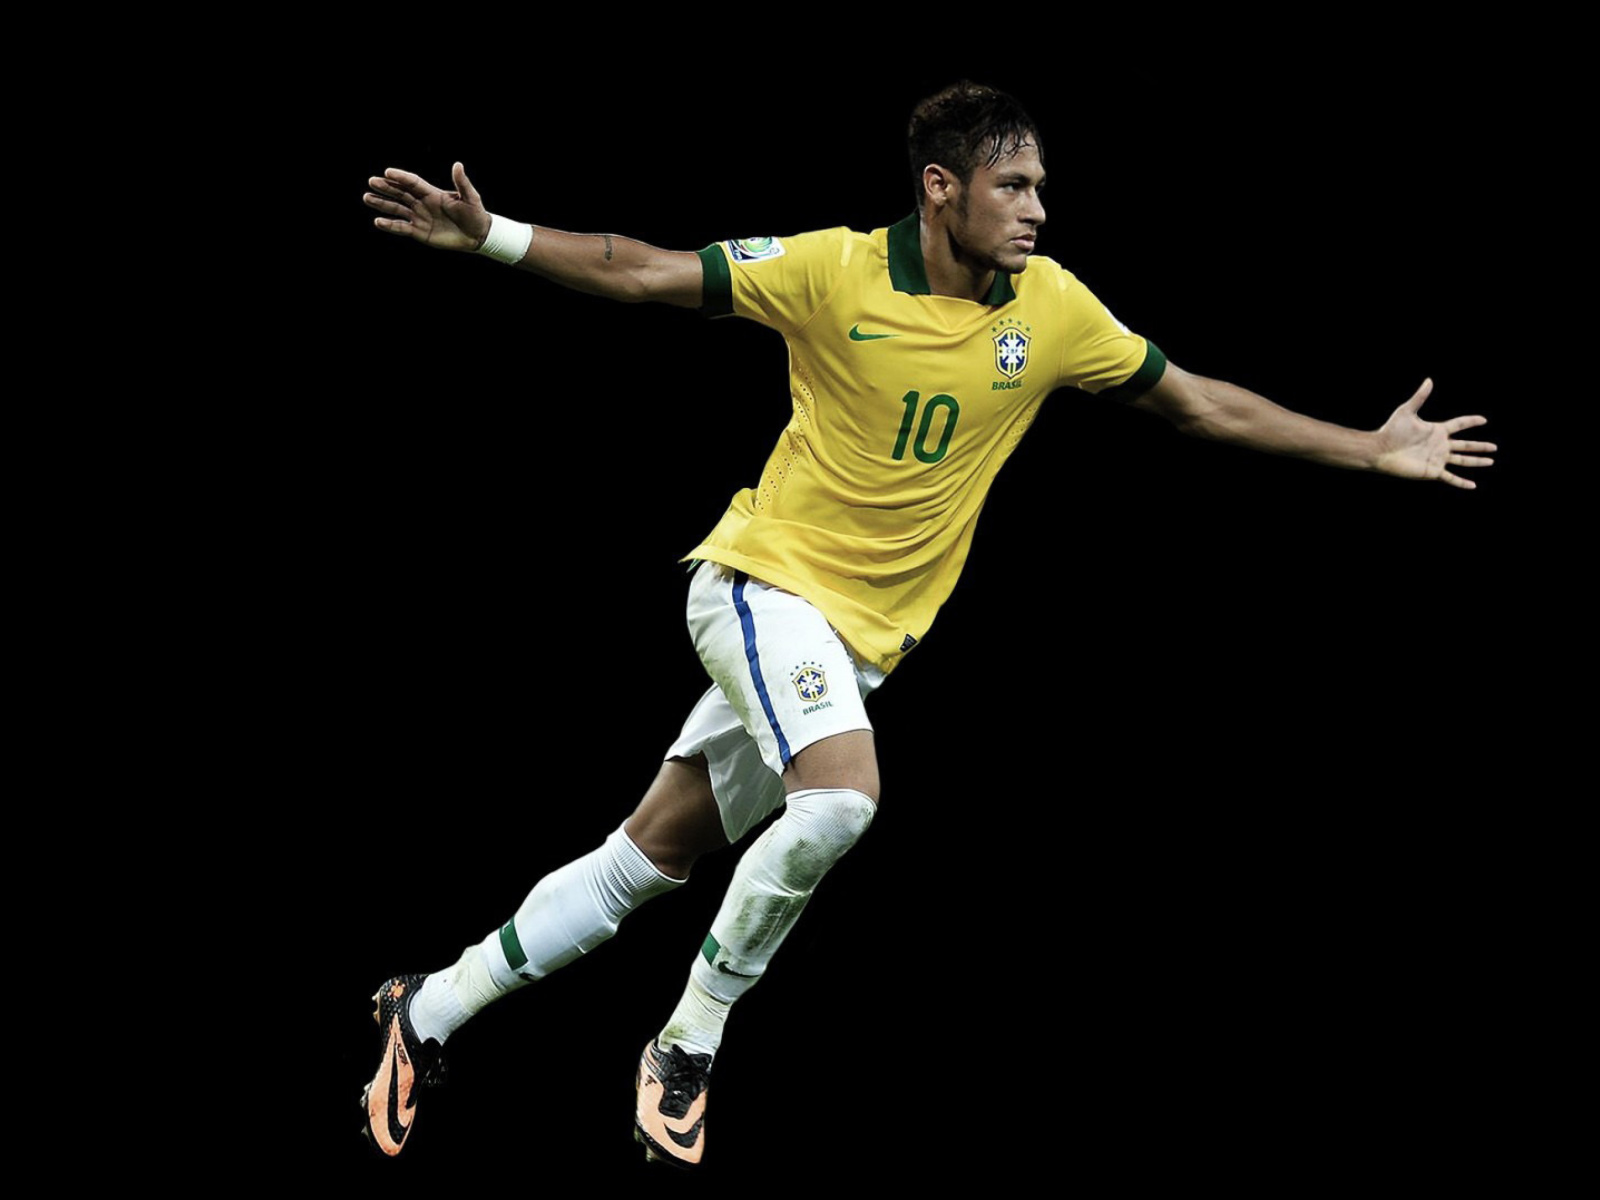 Neymar Brazil Football Player wallpaper 1600x1200